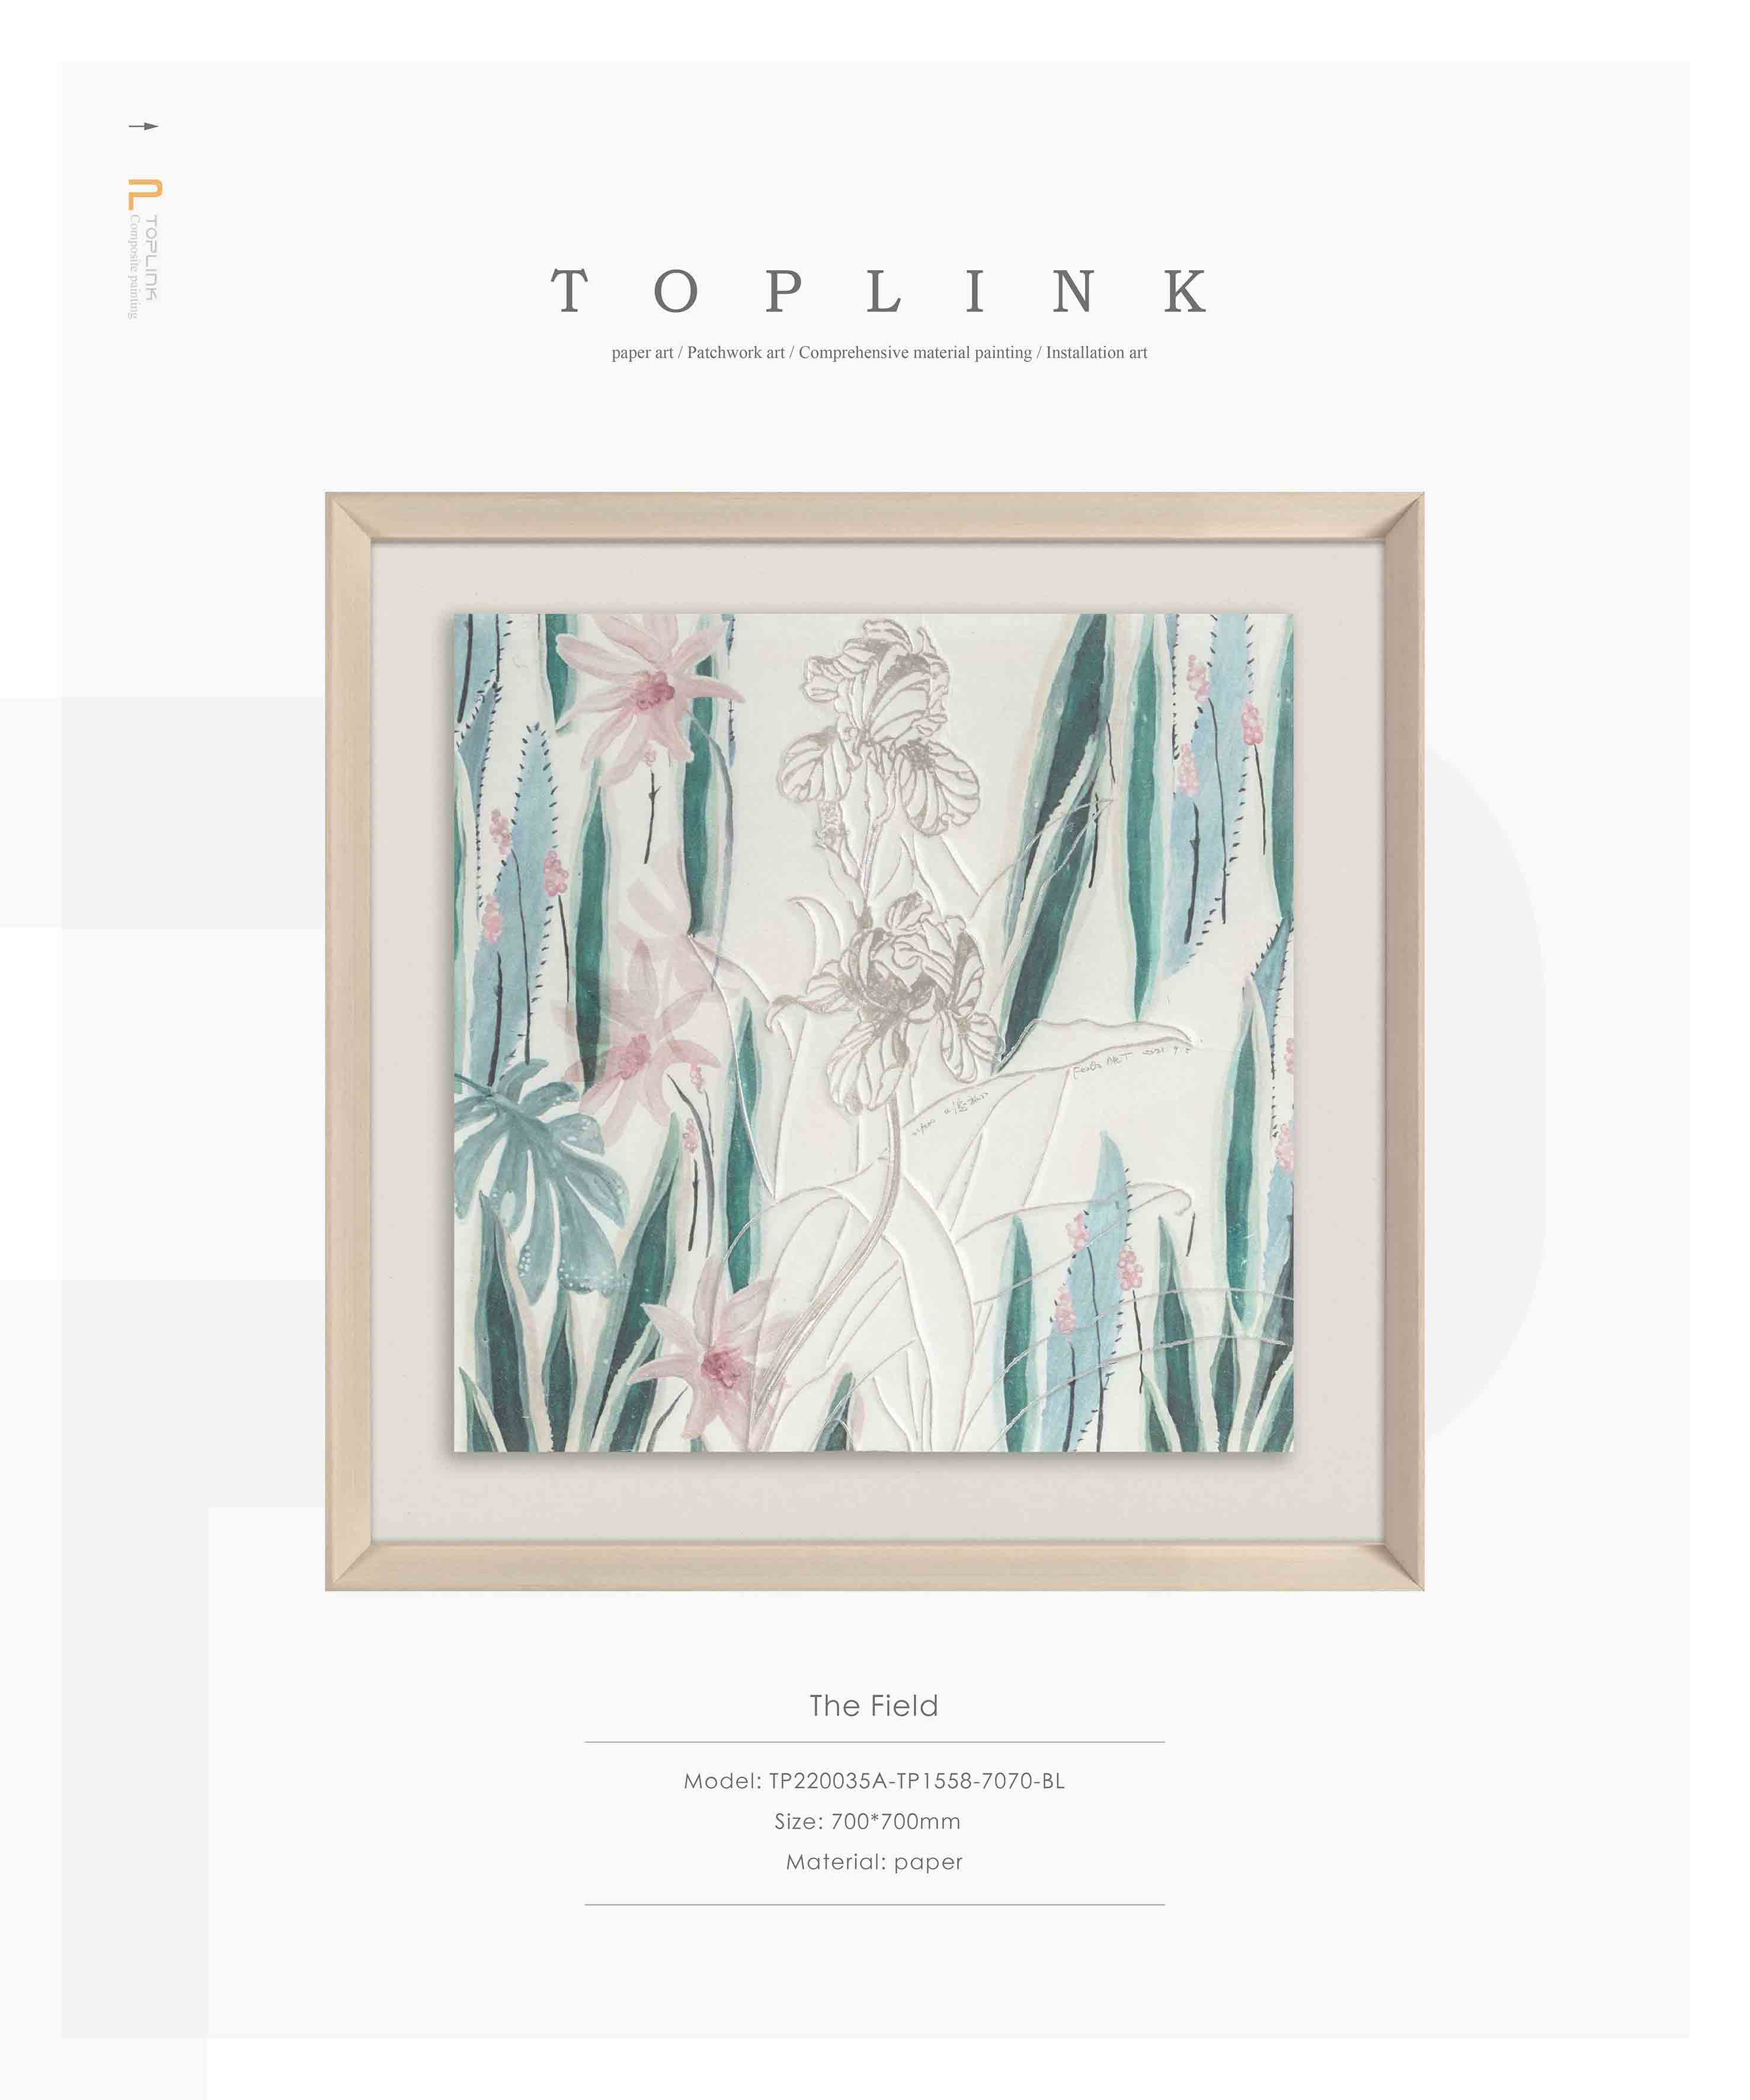 TOPLINK-Paper Art - Abstract  art